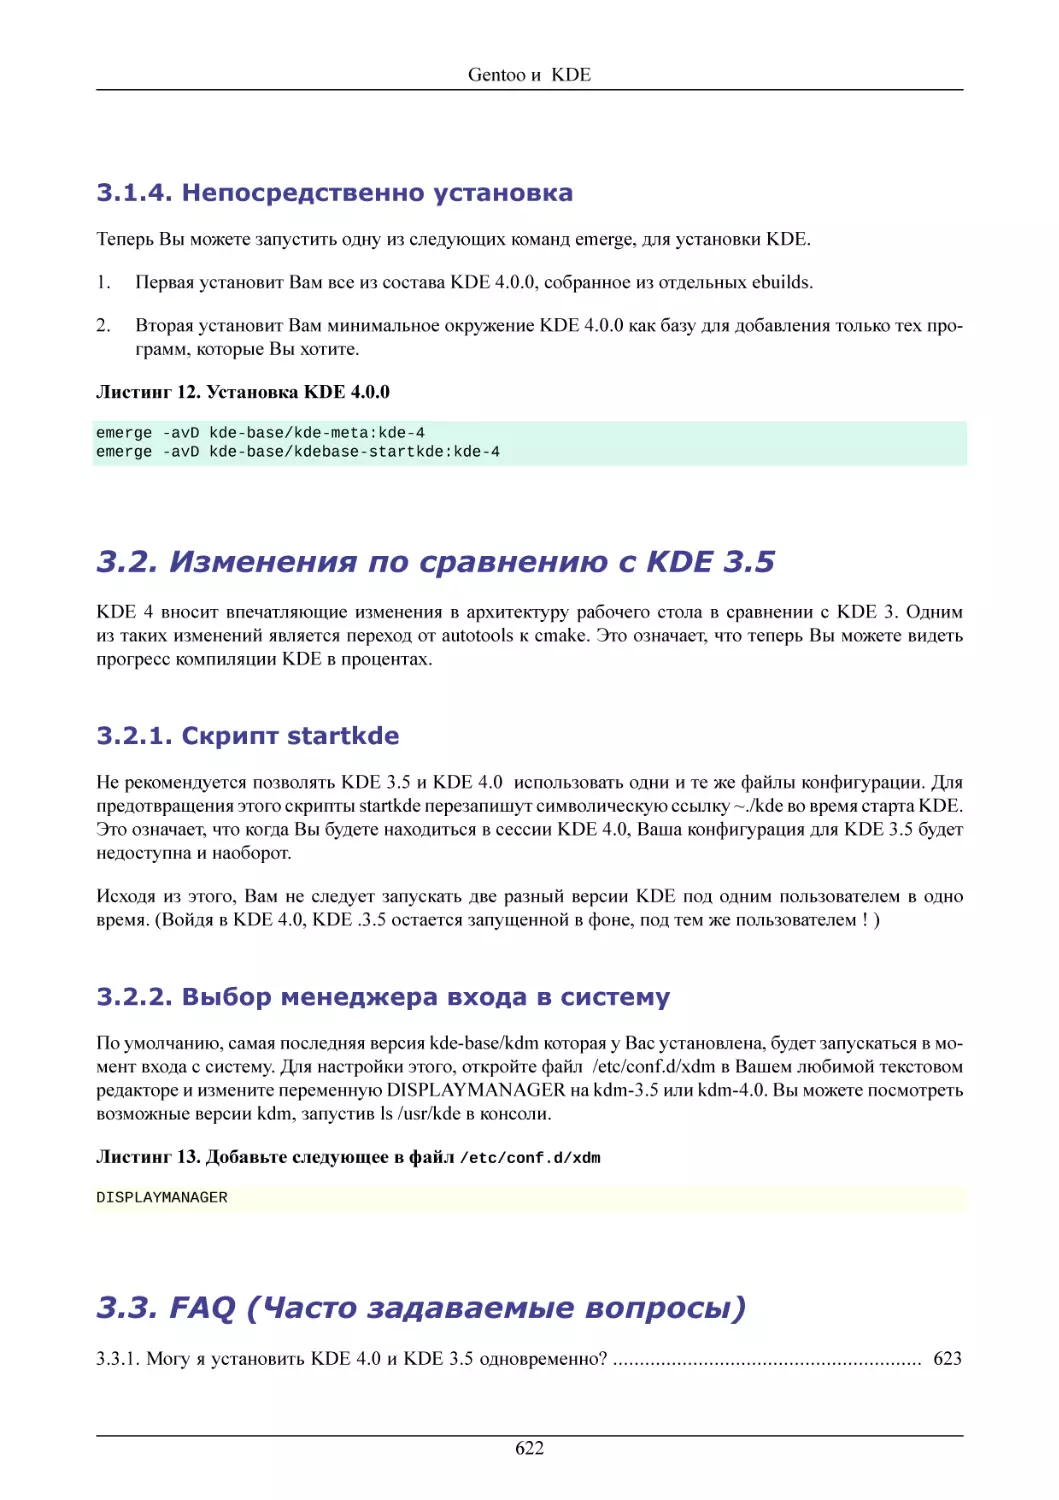 Непосредственно установка
Изменения по сравнению с KDE 3.5
Скрипт startkde
Выбор менеджера входа в систему
FAQ (Часто задаваемые вопросы)